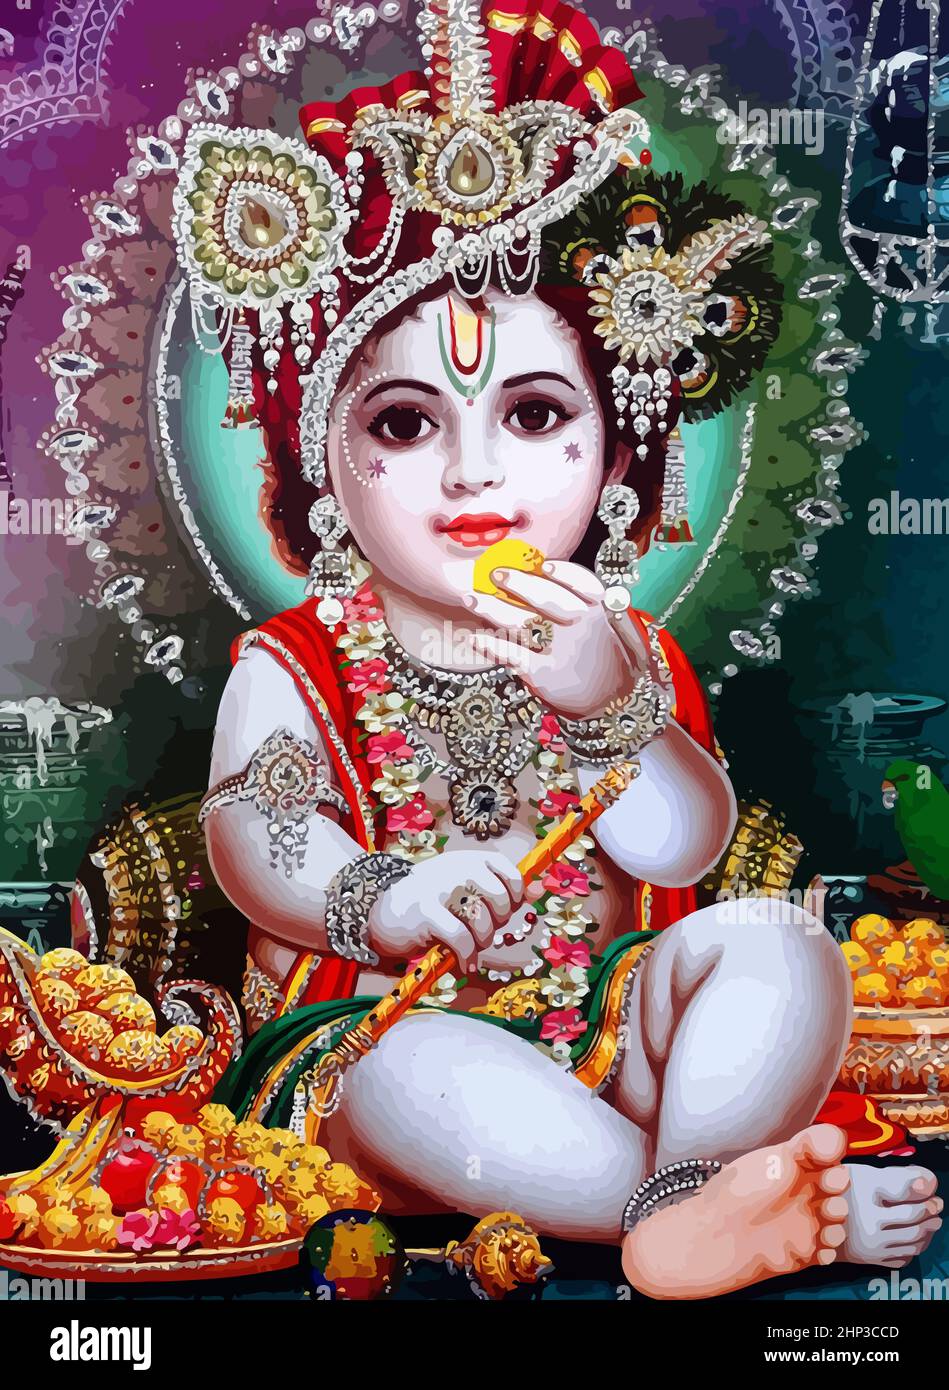 shri gopal krishna hinduism culture mythology illustration Stock Photo